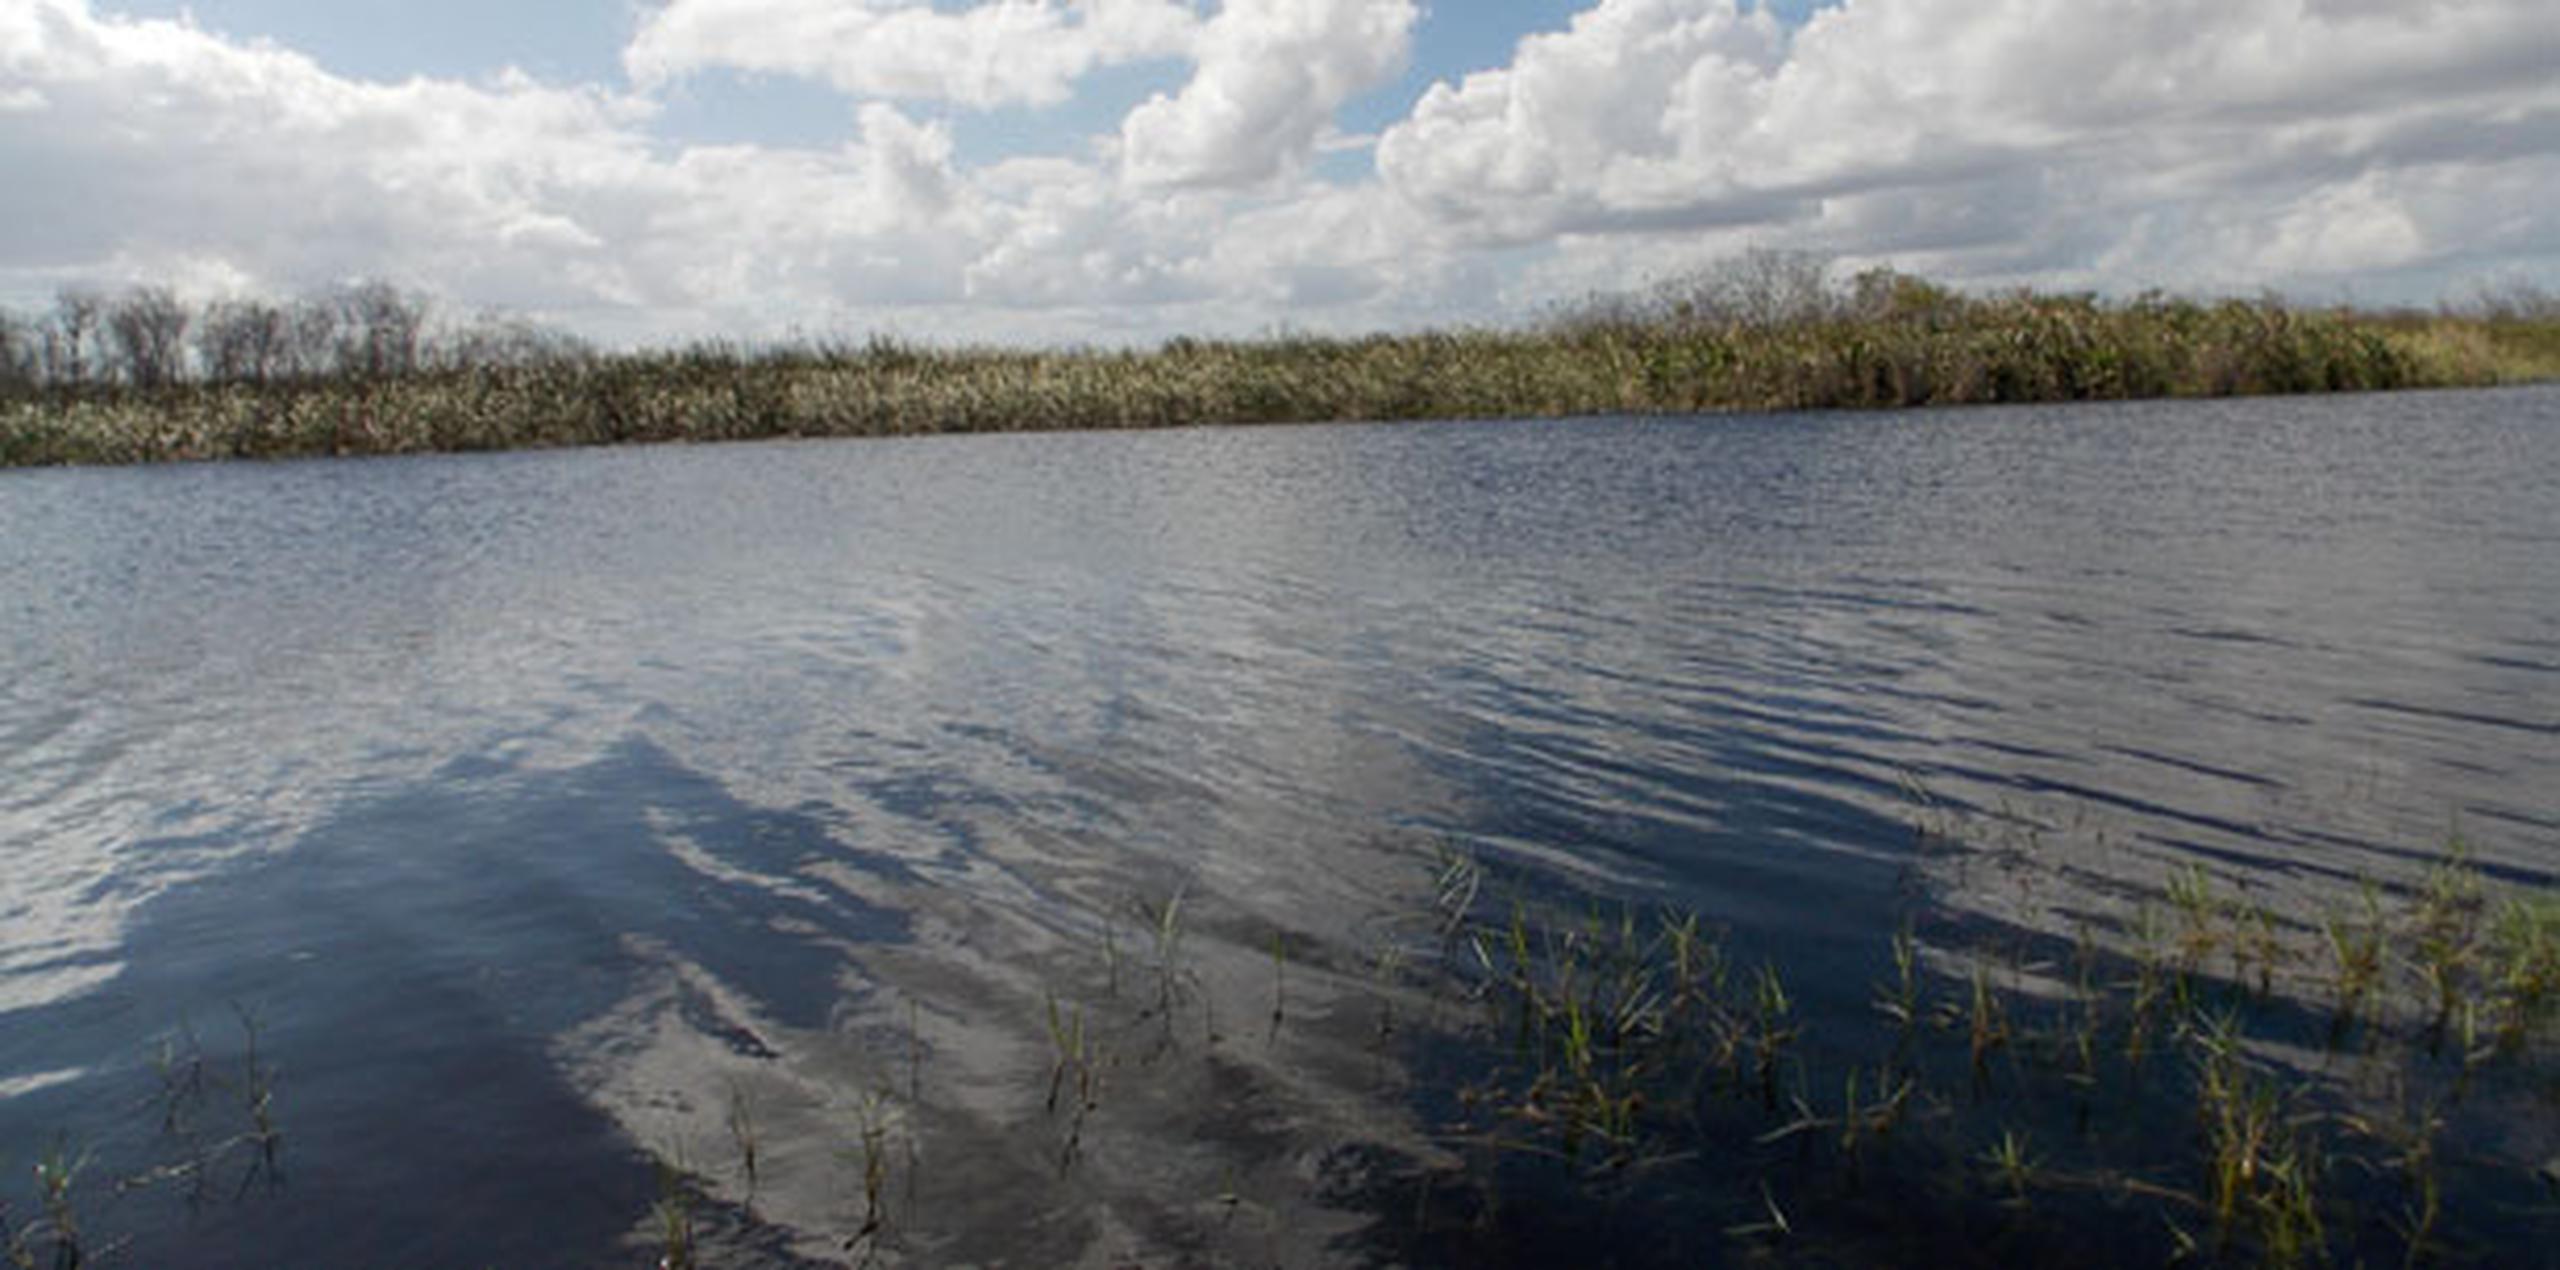 Hasta el punto que "partes costeras de los Everglades que estuvieron inundadas por el agua marina cerca de un 70 % del tiempo, ahora están cubiertas por el agua marina un 90 % del tiempo", alertó el informe. (EFE)